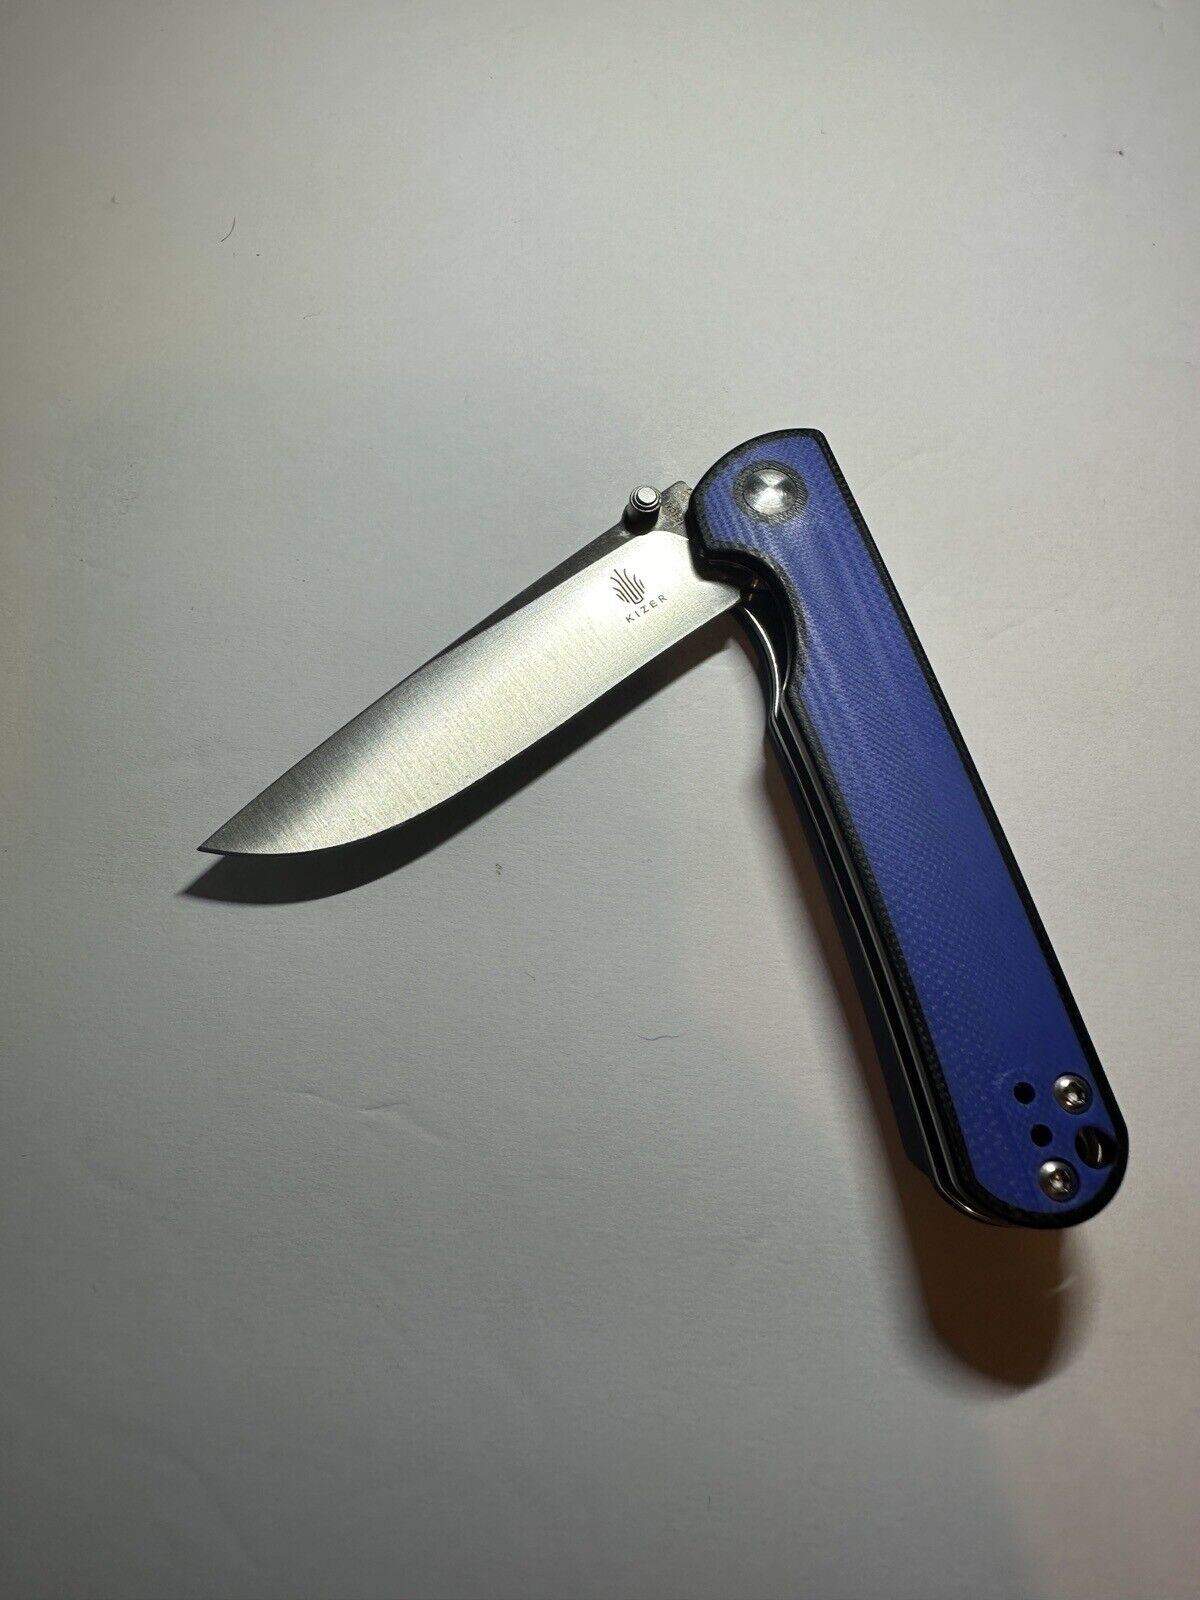 Kizer Cutlery Rapids Pocket Knife Linerlock Black & Blue Folding 154CM Steel